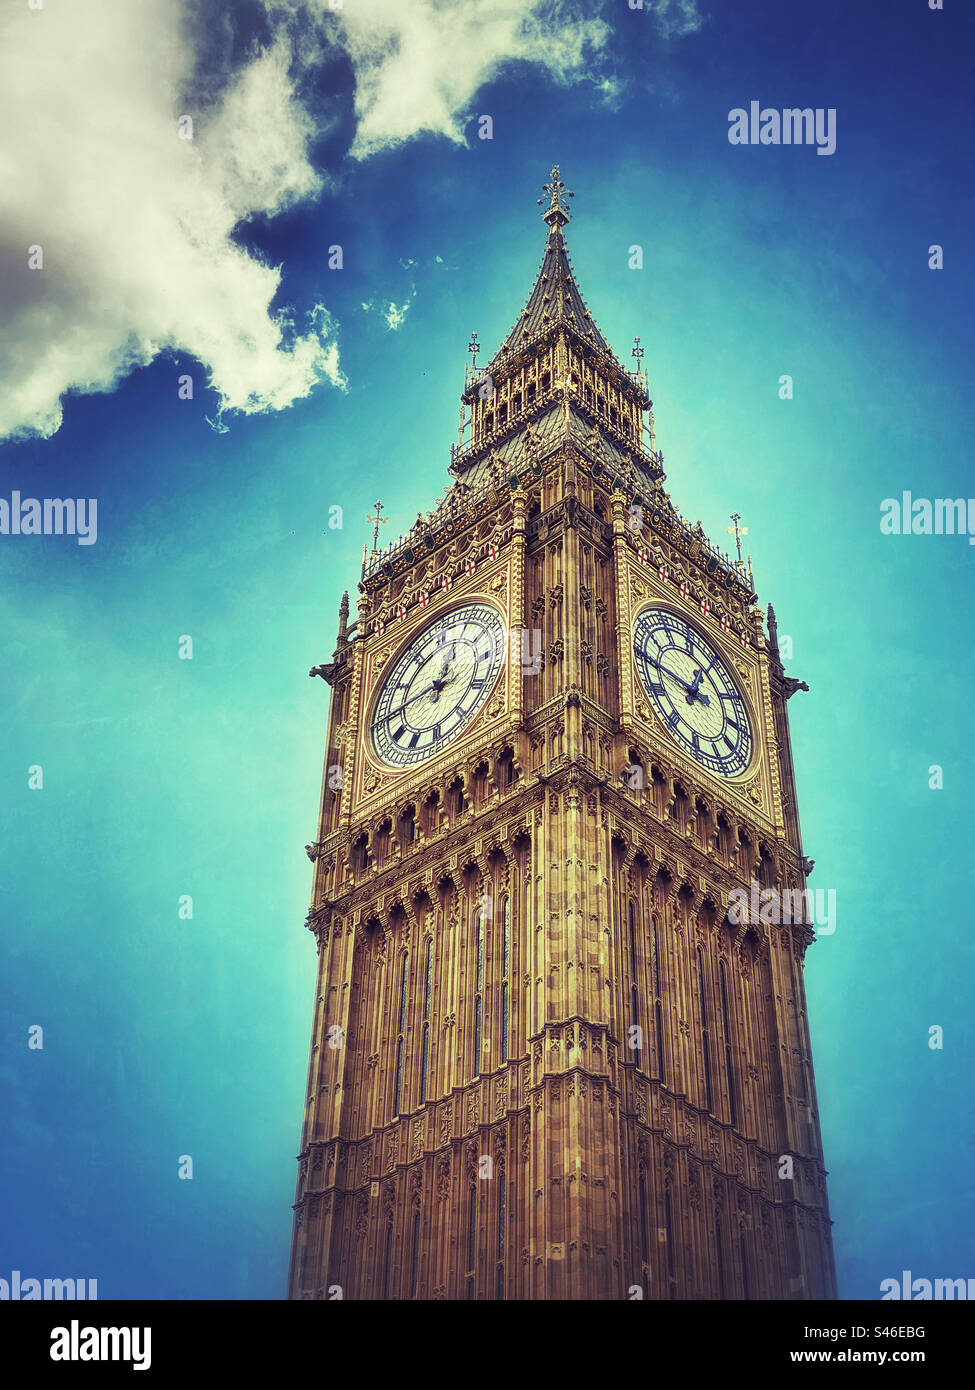 Der weltberühmte Turm und die Uhrwand von Big Ben neben den Houses of Parliament in Westminster, London, England. Der Elizabeth Tower und Big Ben wurden restauriert. Foto ©️ COLIN HOSKINS. Stockfoto